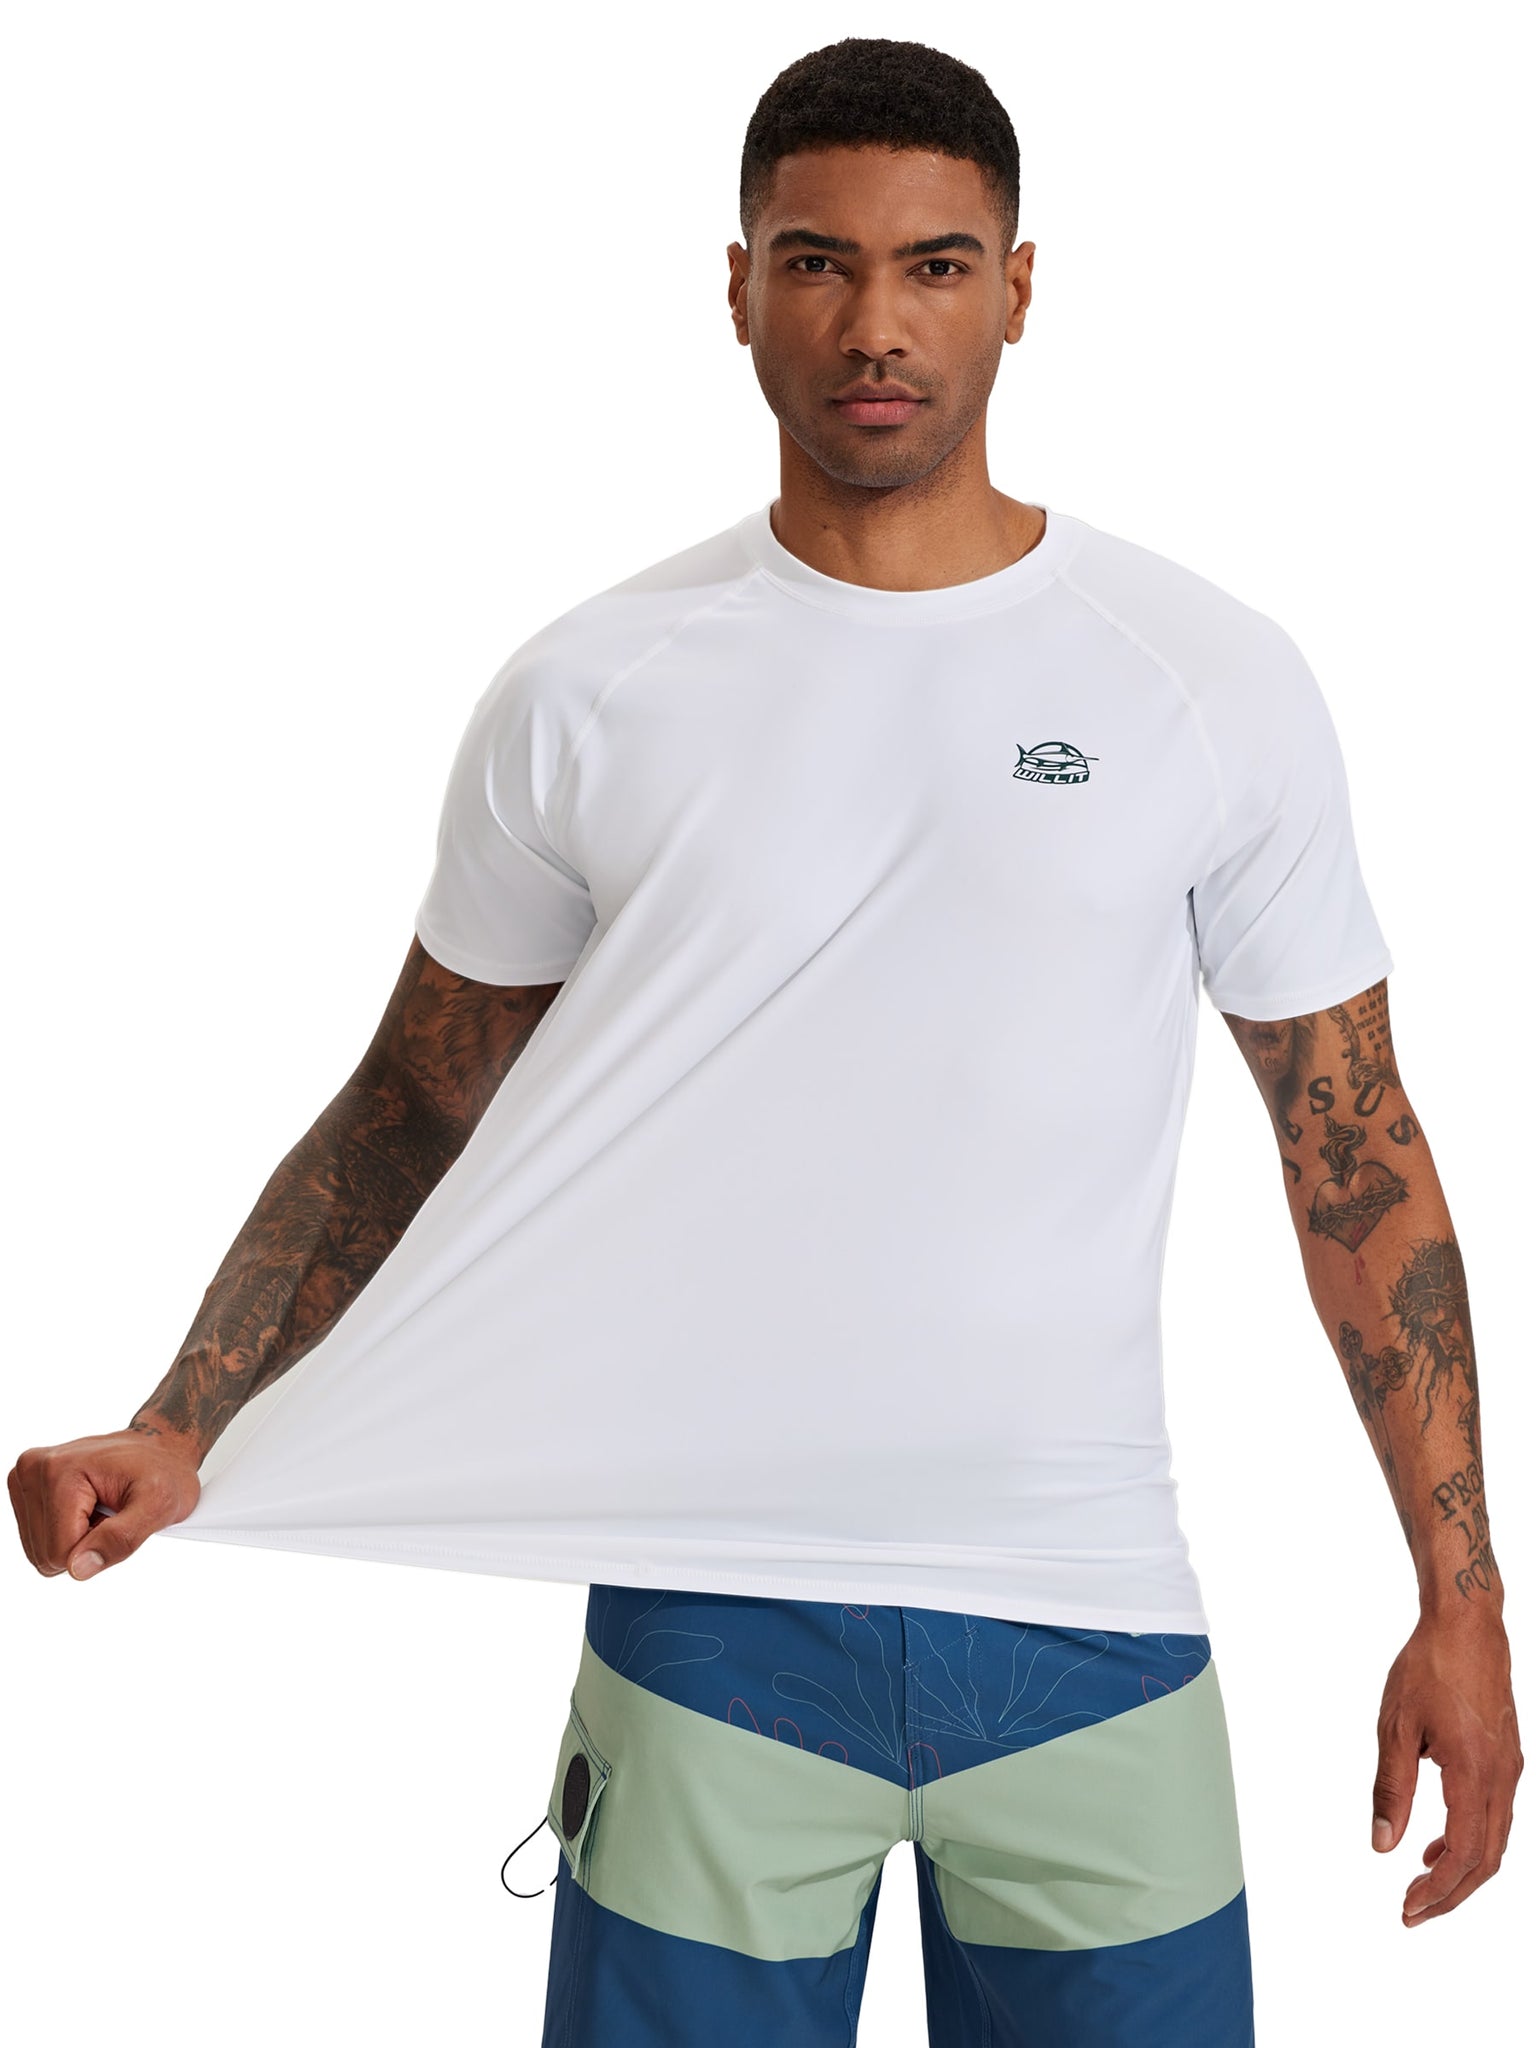 Men's Sun Protection Short Sleeve Shirt_White_model2